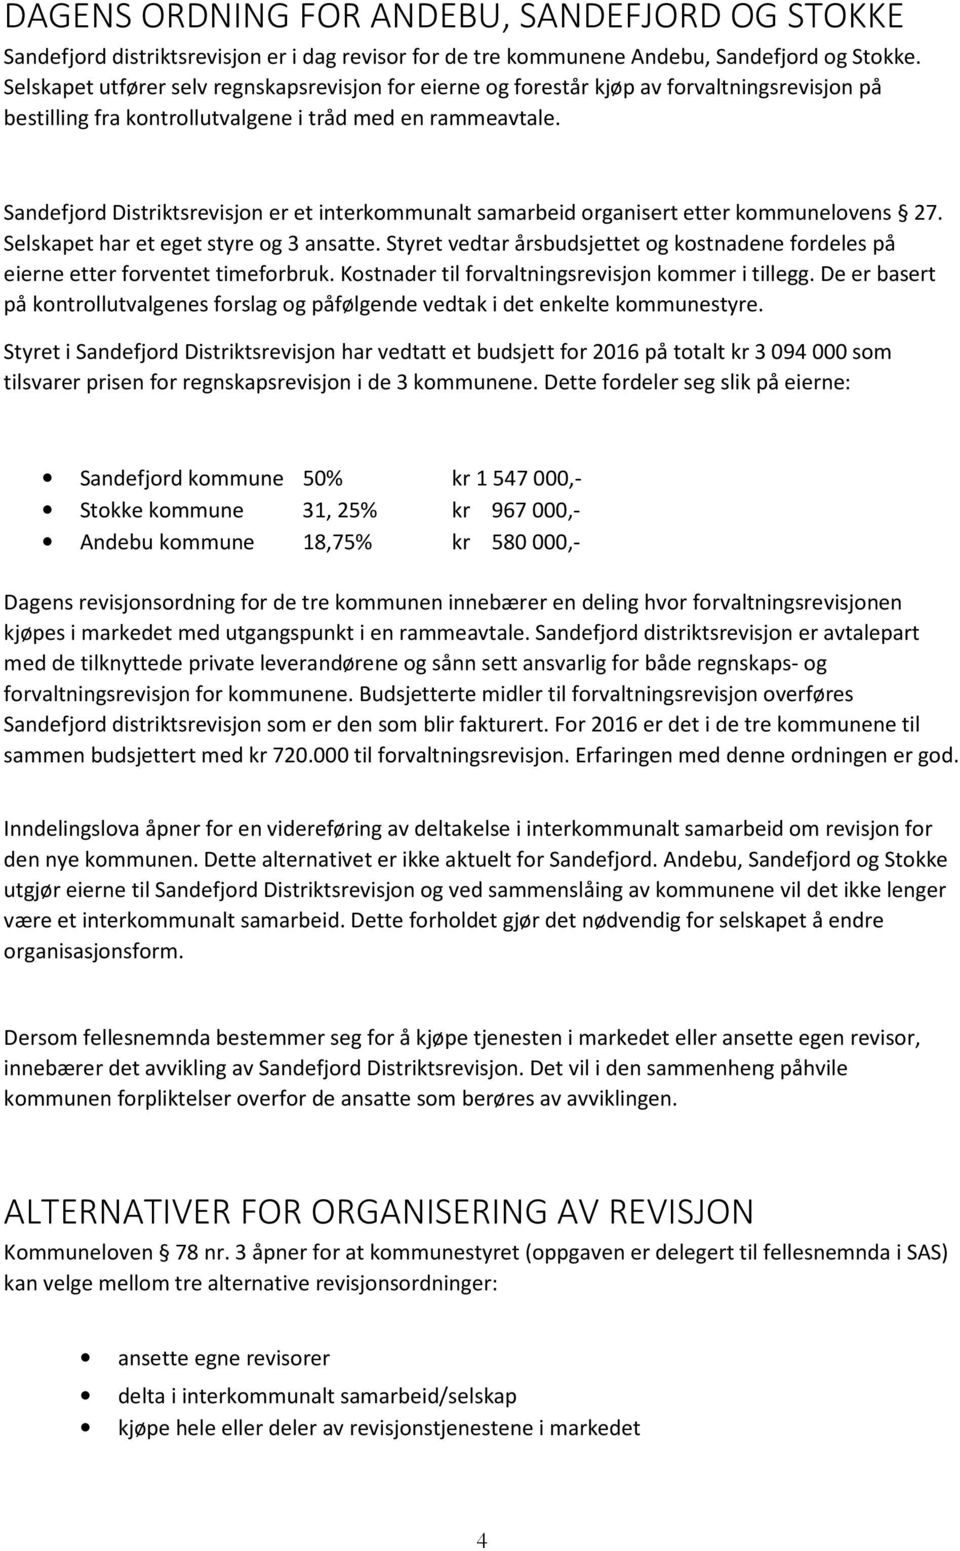 Sandefjord Distriktsrevisjon er et interkommunalt samarbeid organisert etter kommunelovens 27. Selskapet har et eget styre og 3 ansatte.